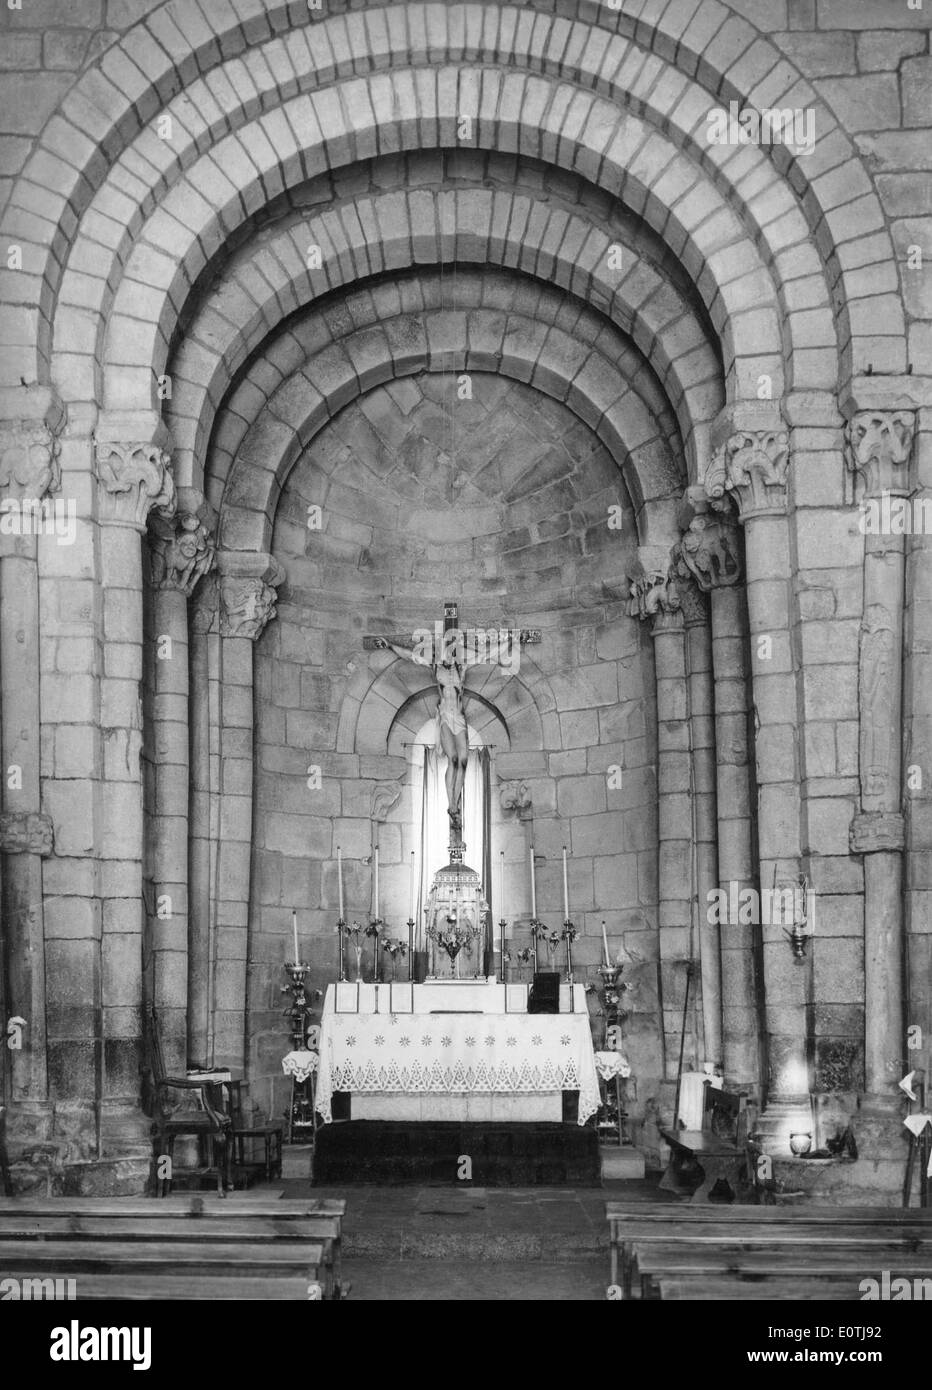 Igreja do Mosteiro de Longos Vales, Monção, Portugal Stock Photo